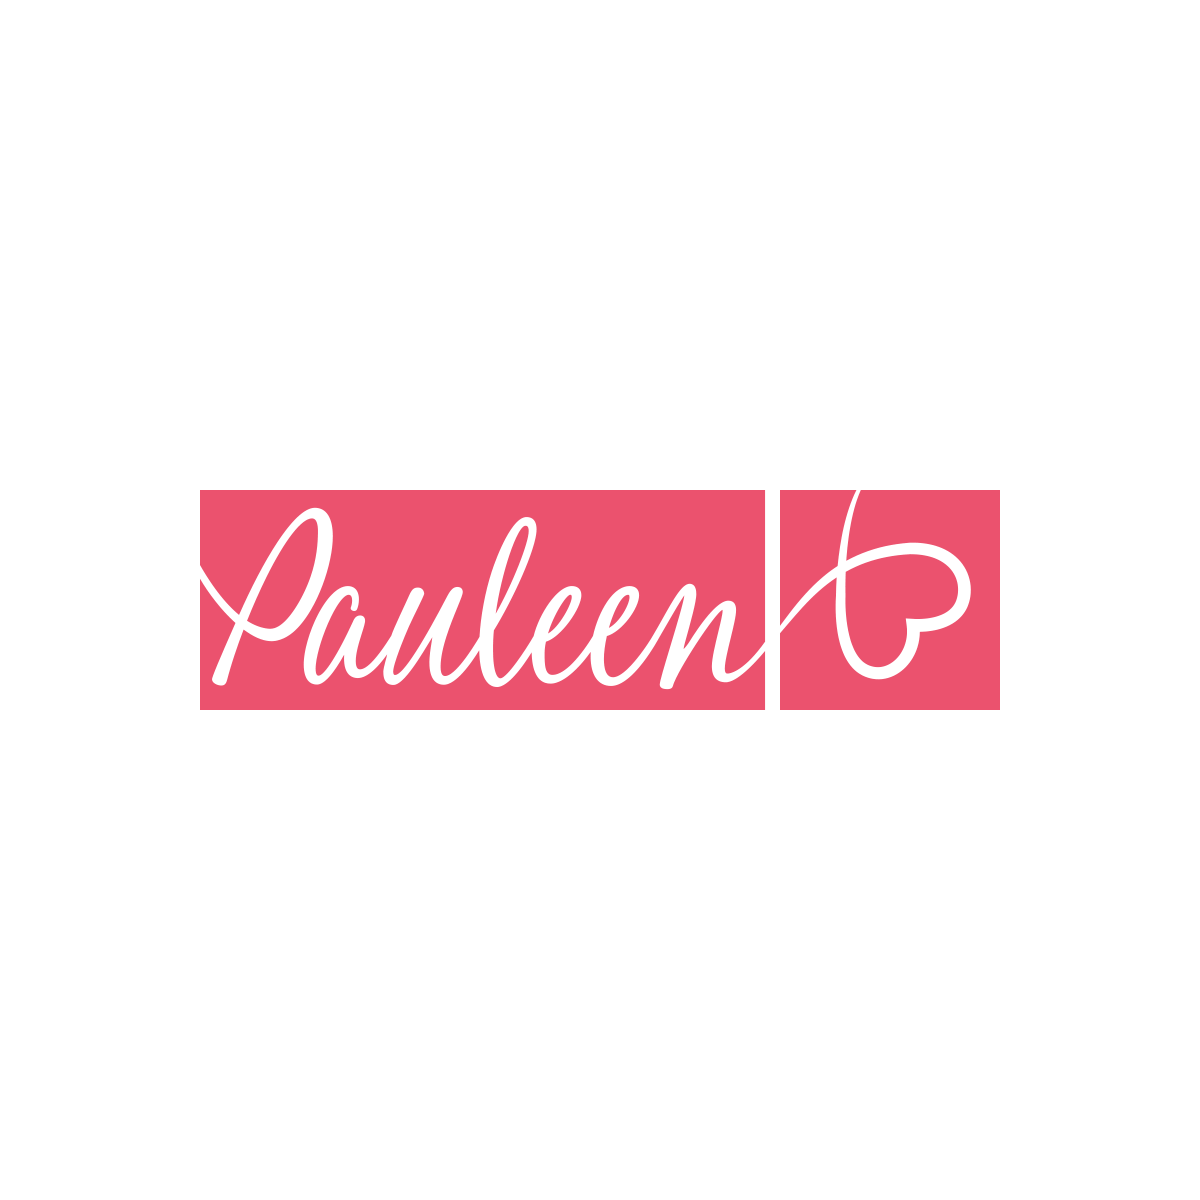 Pauleen